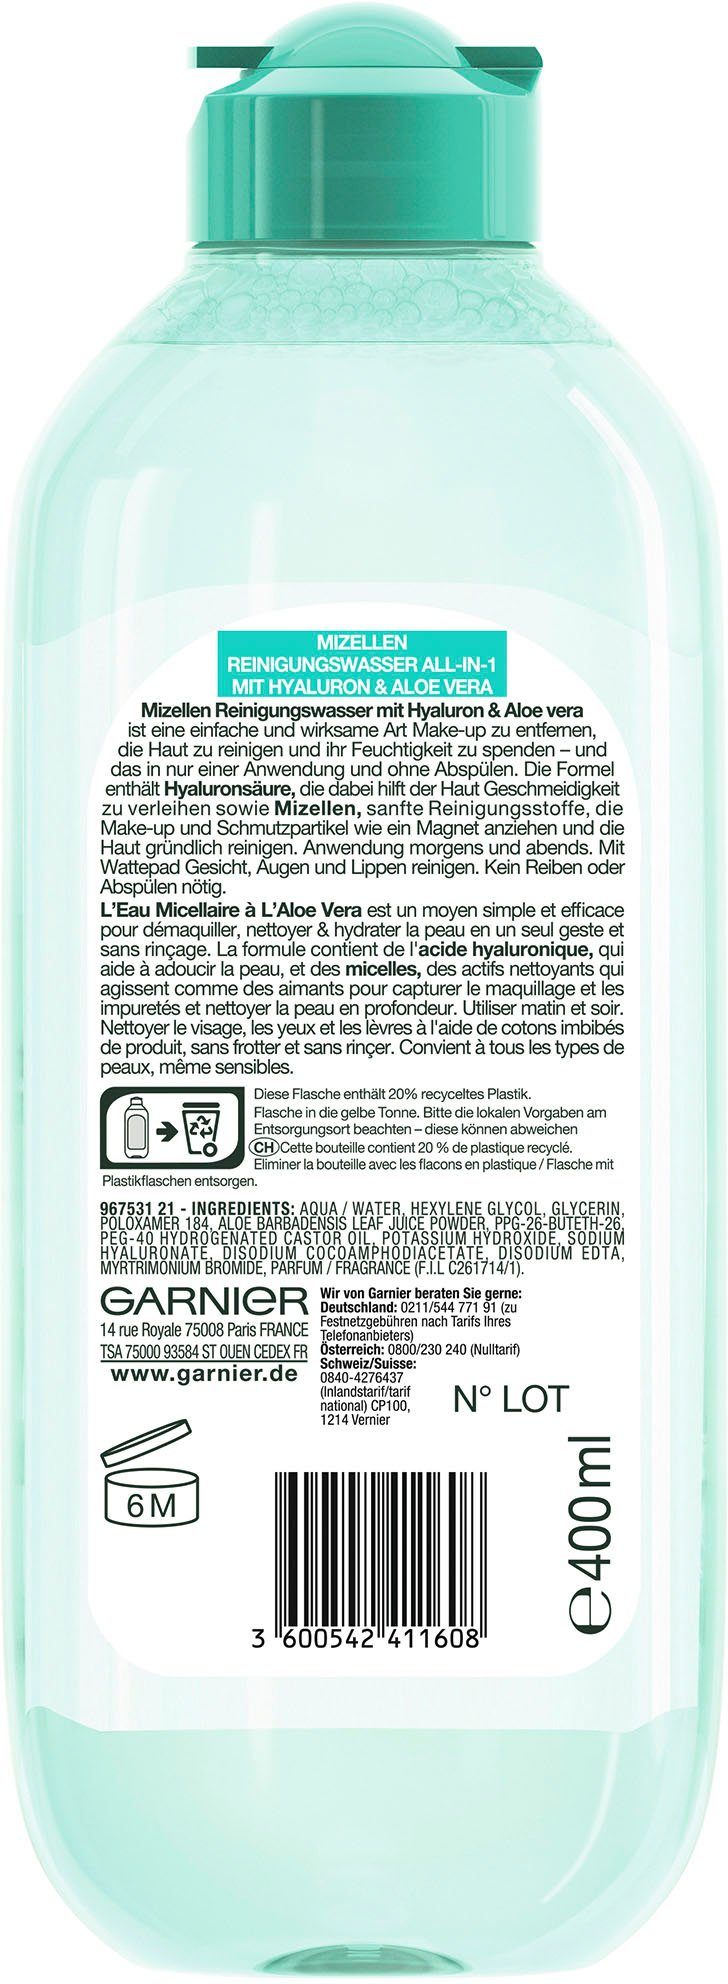 GARNIER Gesichtswasser Mizellen All-in-1 Reinigungswasser